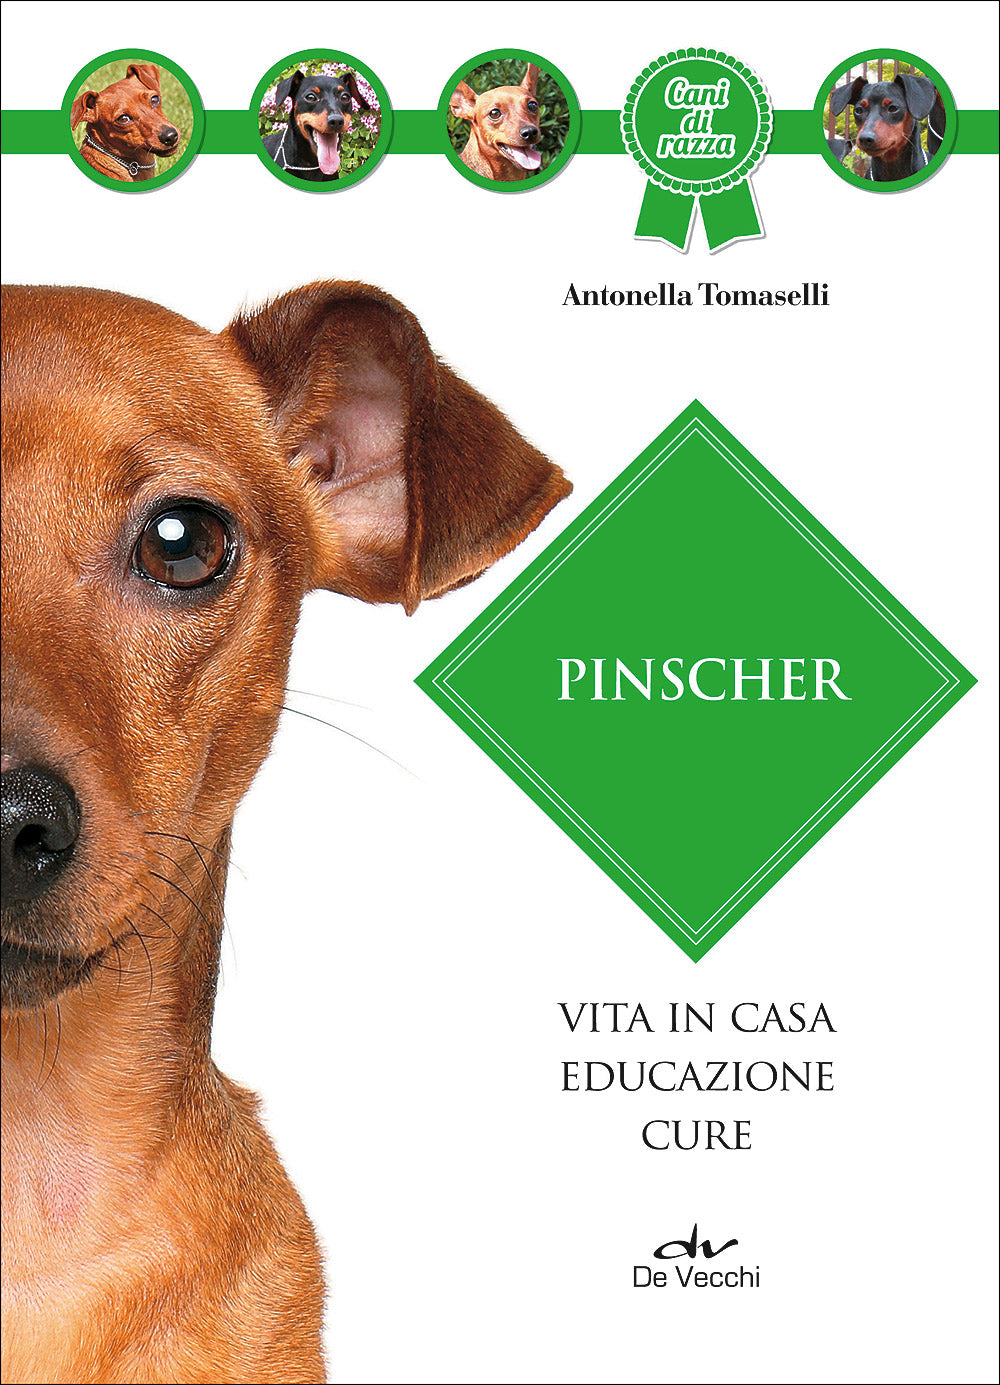 Pinscher::Vita in casa - Educazione - Cure